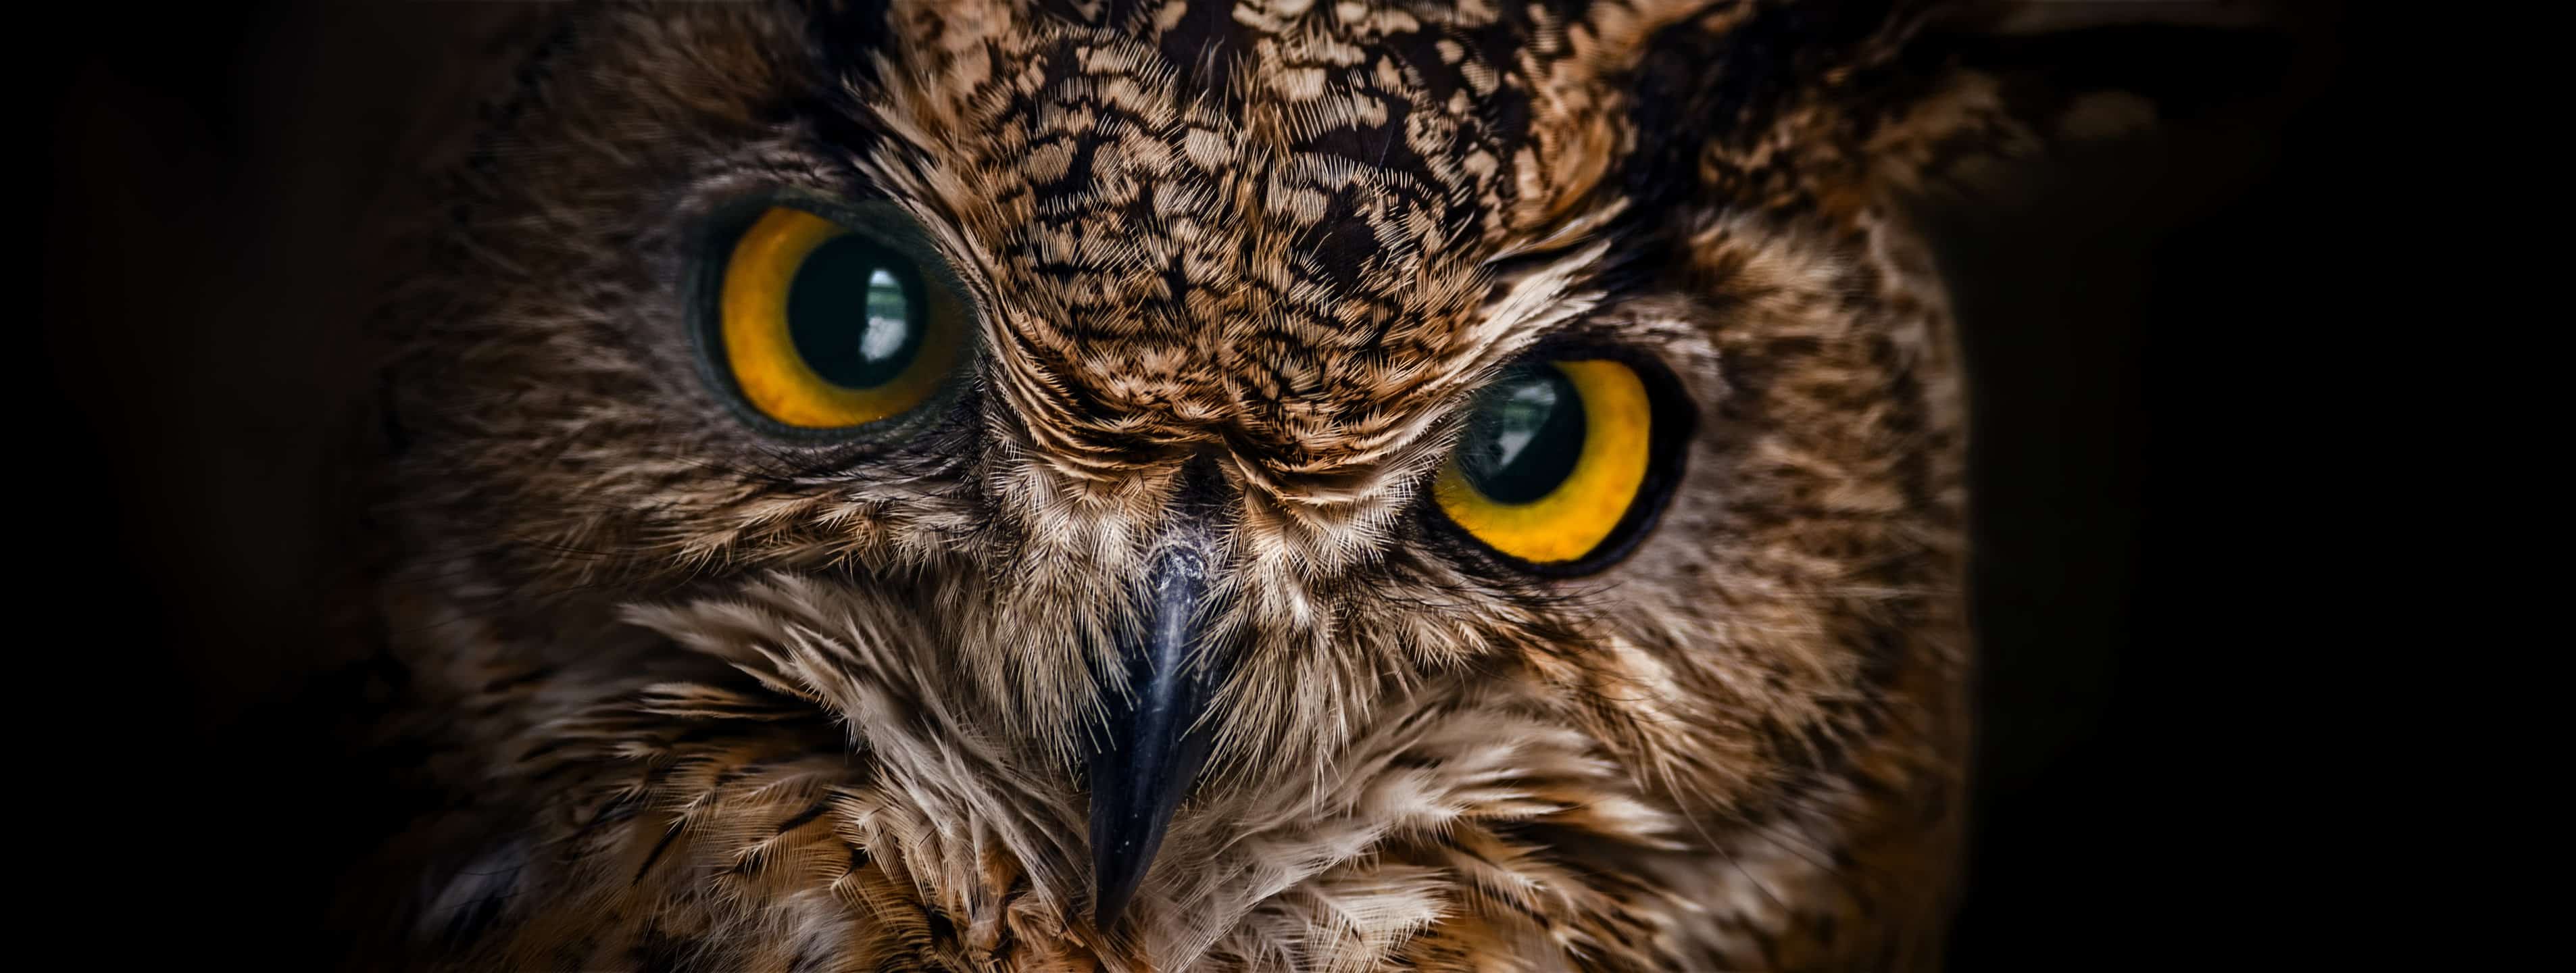 Owl Spirit Animal Symbolism & Meaning - AZ Animals